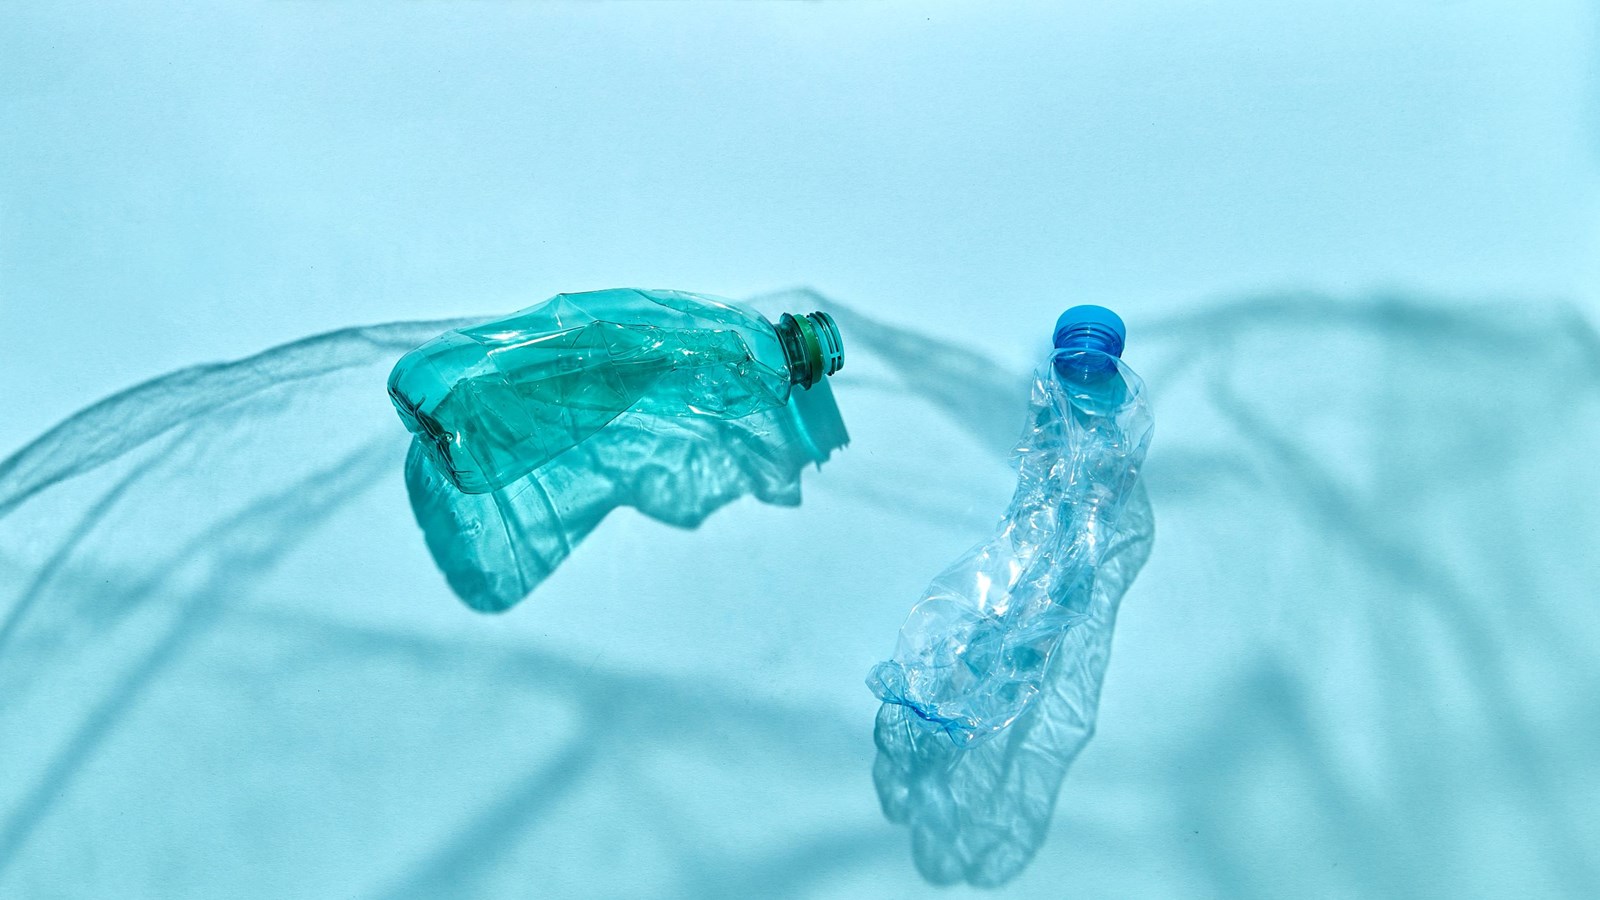 Krøllede plastikflasker